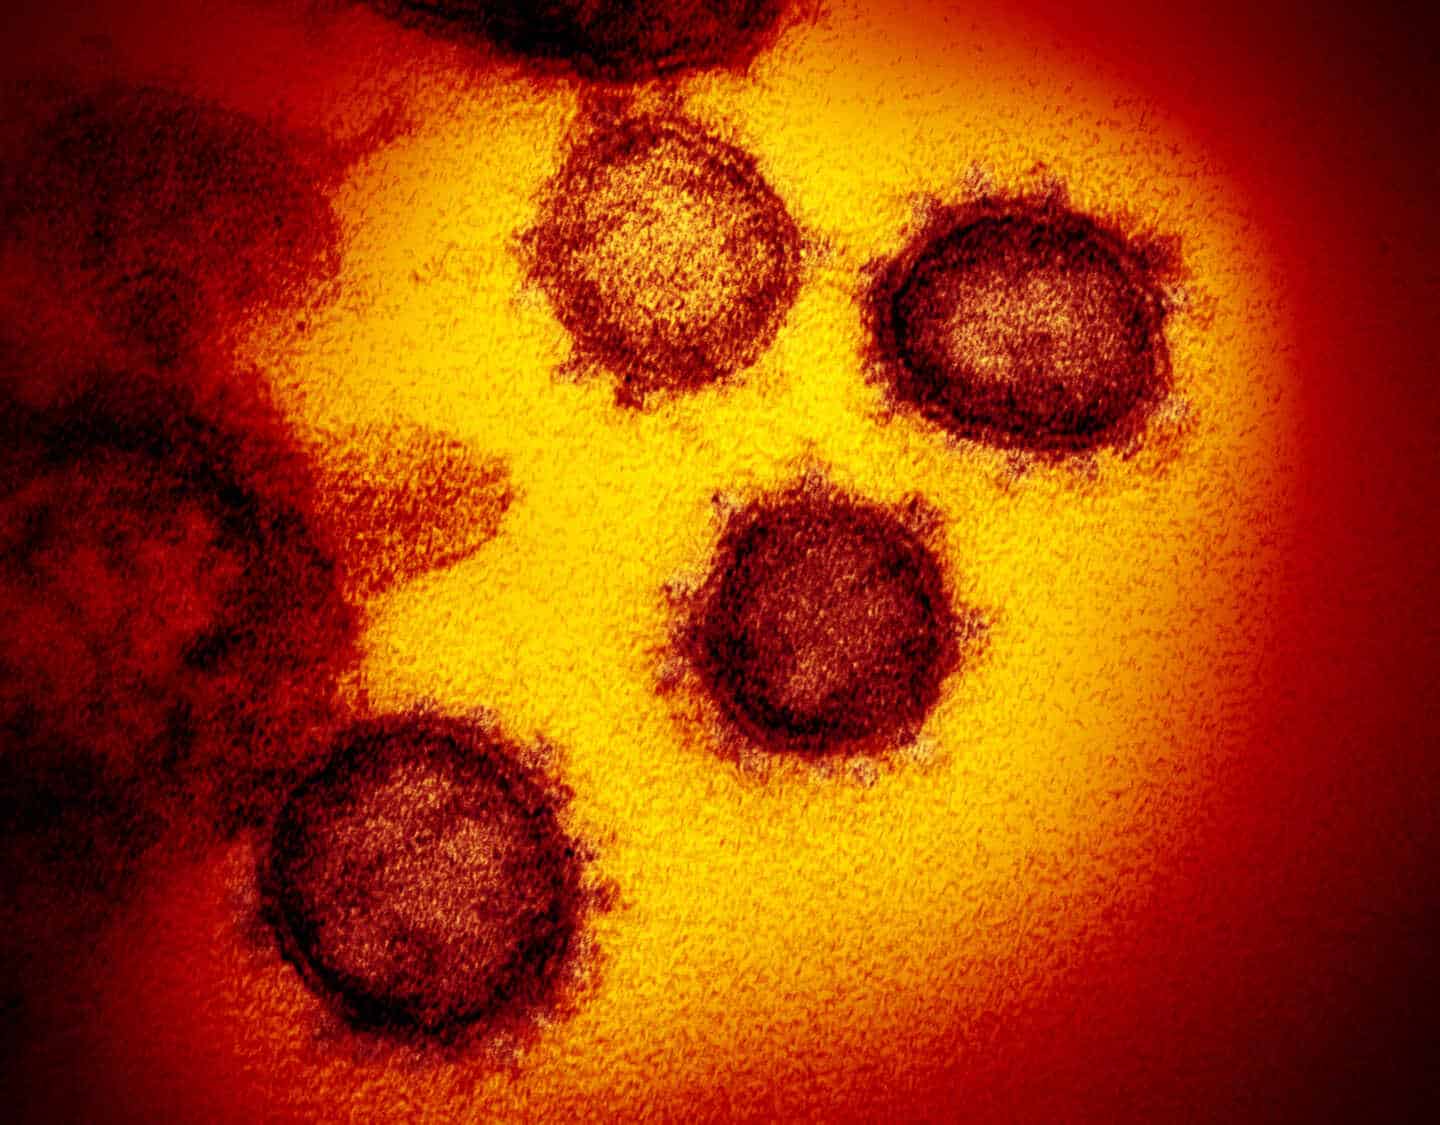 Rusia detecta "mutaciones" del coronavirus en Siberia y avisa de que podría generarse una nueva variante